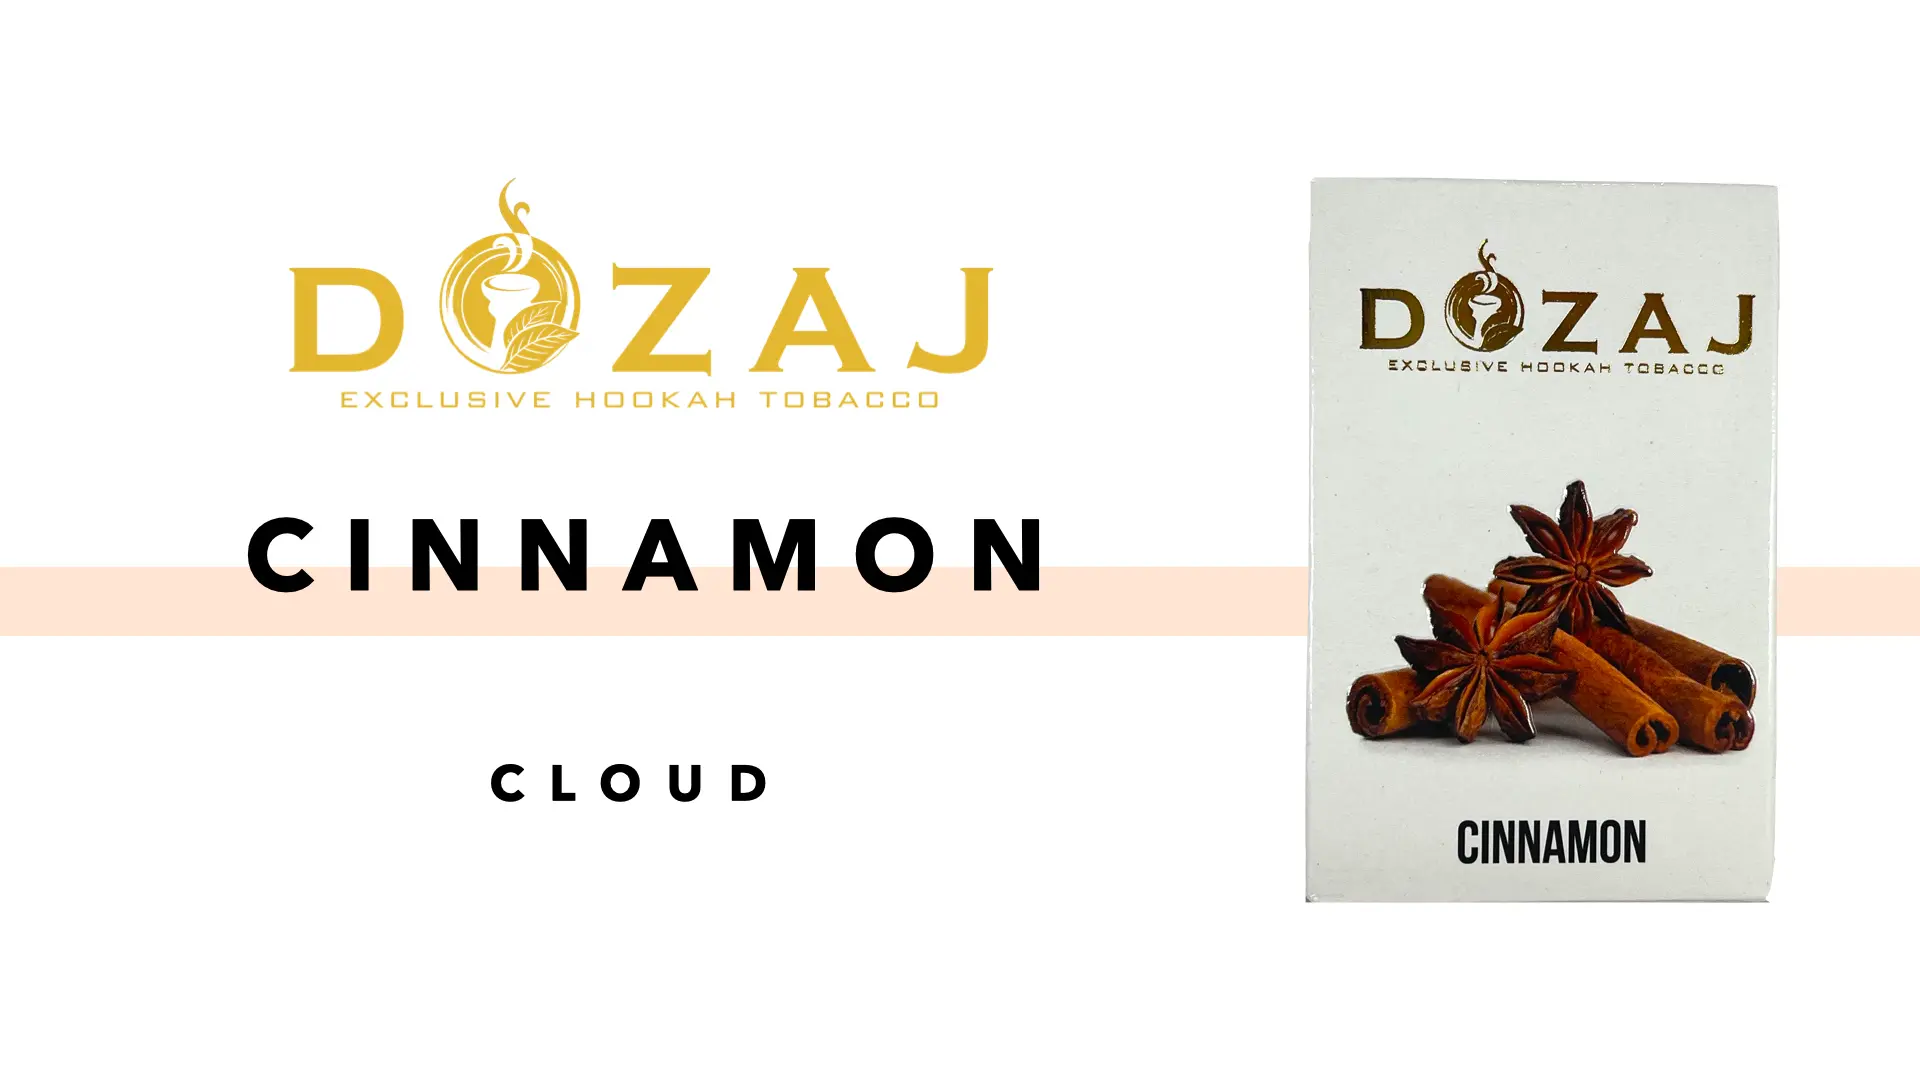 DOZAJ(ドザジ) cinnamon(シナモン) フレーバーレビュー